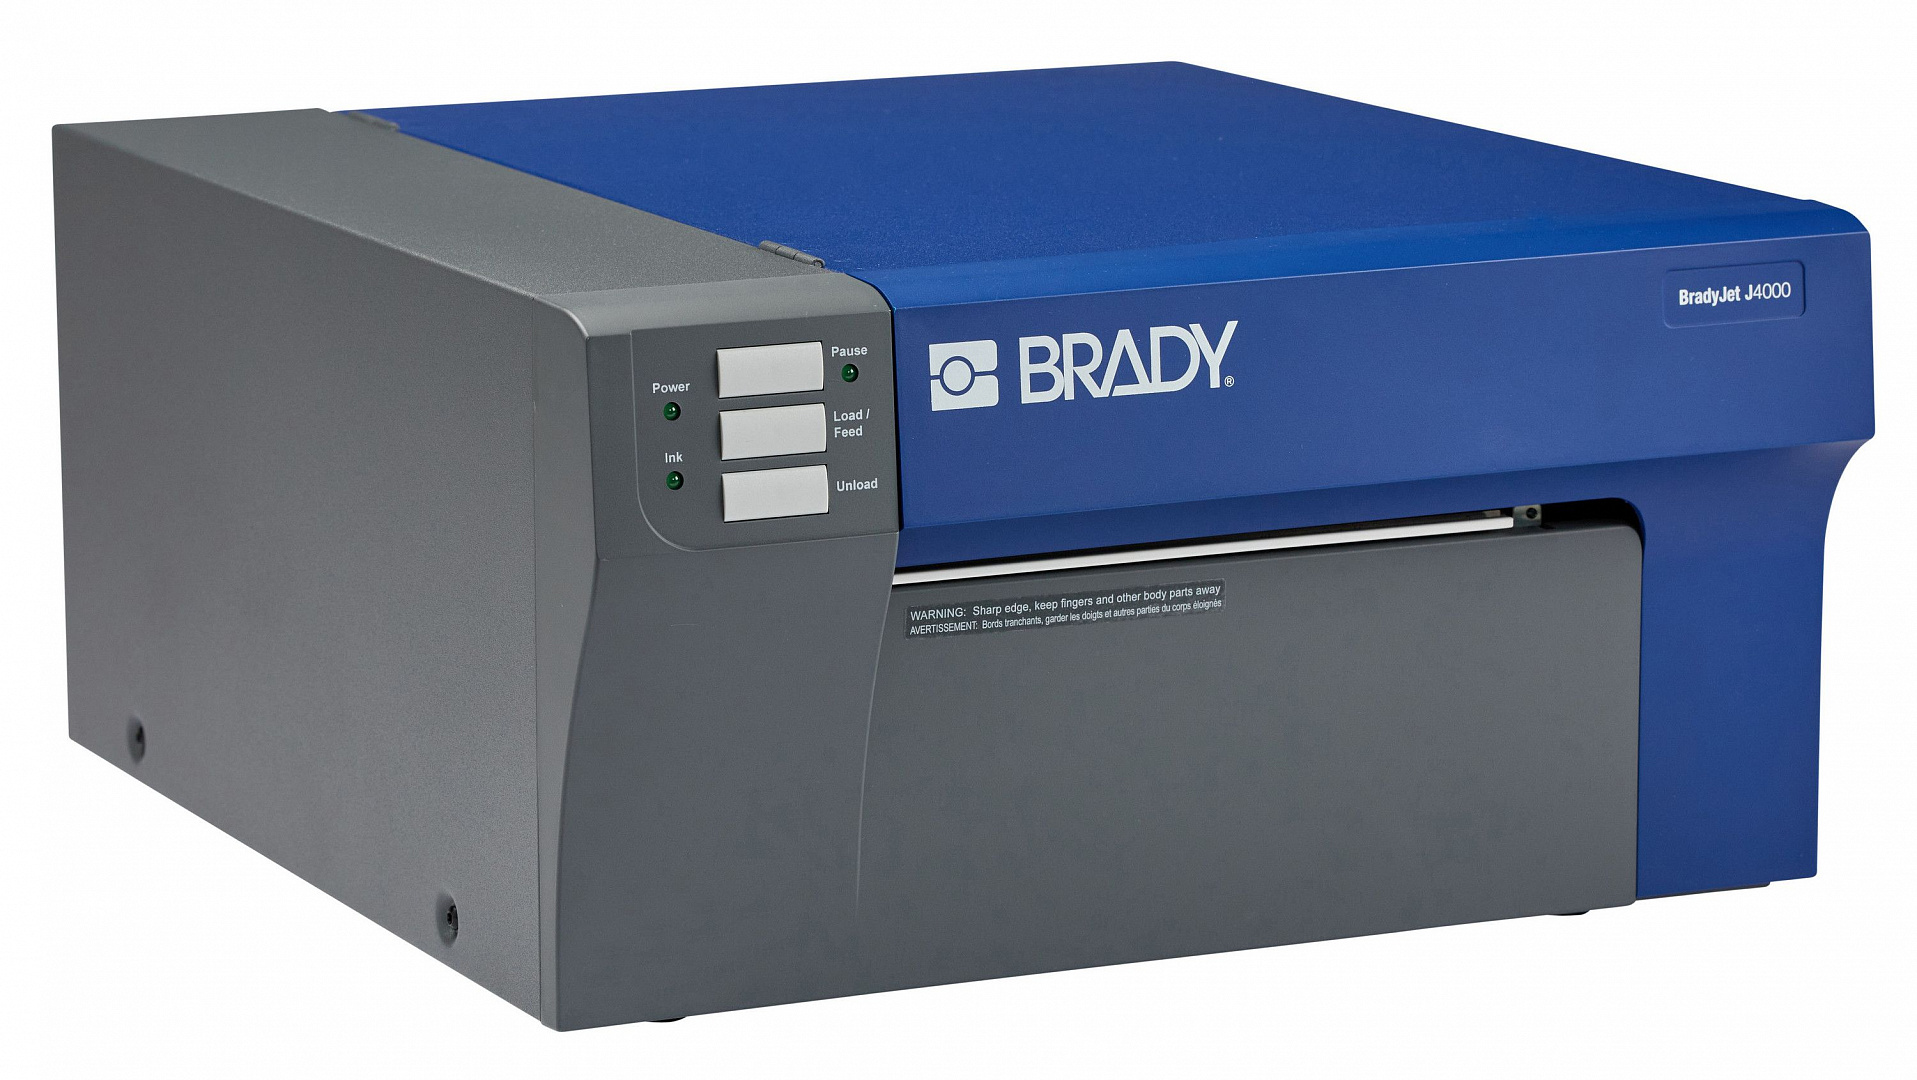 Промышленный цветной принтер этикеток BRADY J4000 производства BRADY